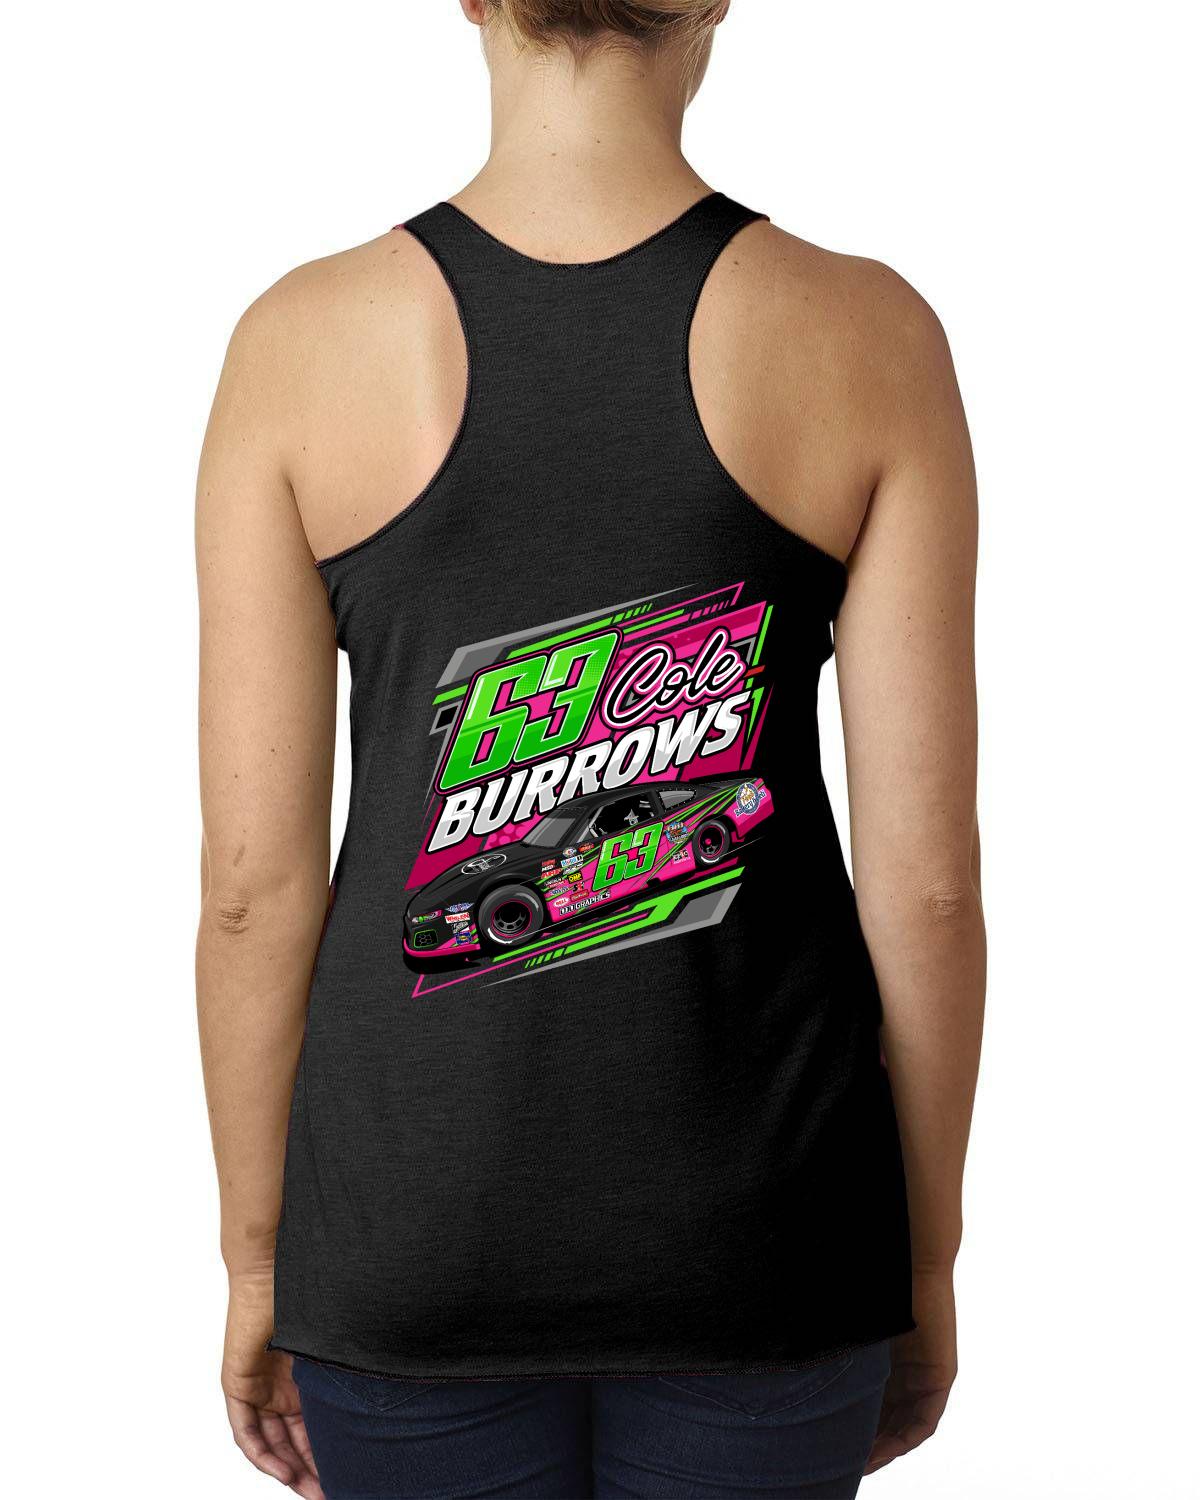 Cole Burrows Racing Ladies' Tank Top